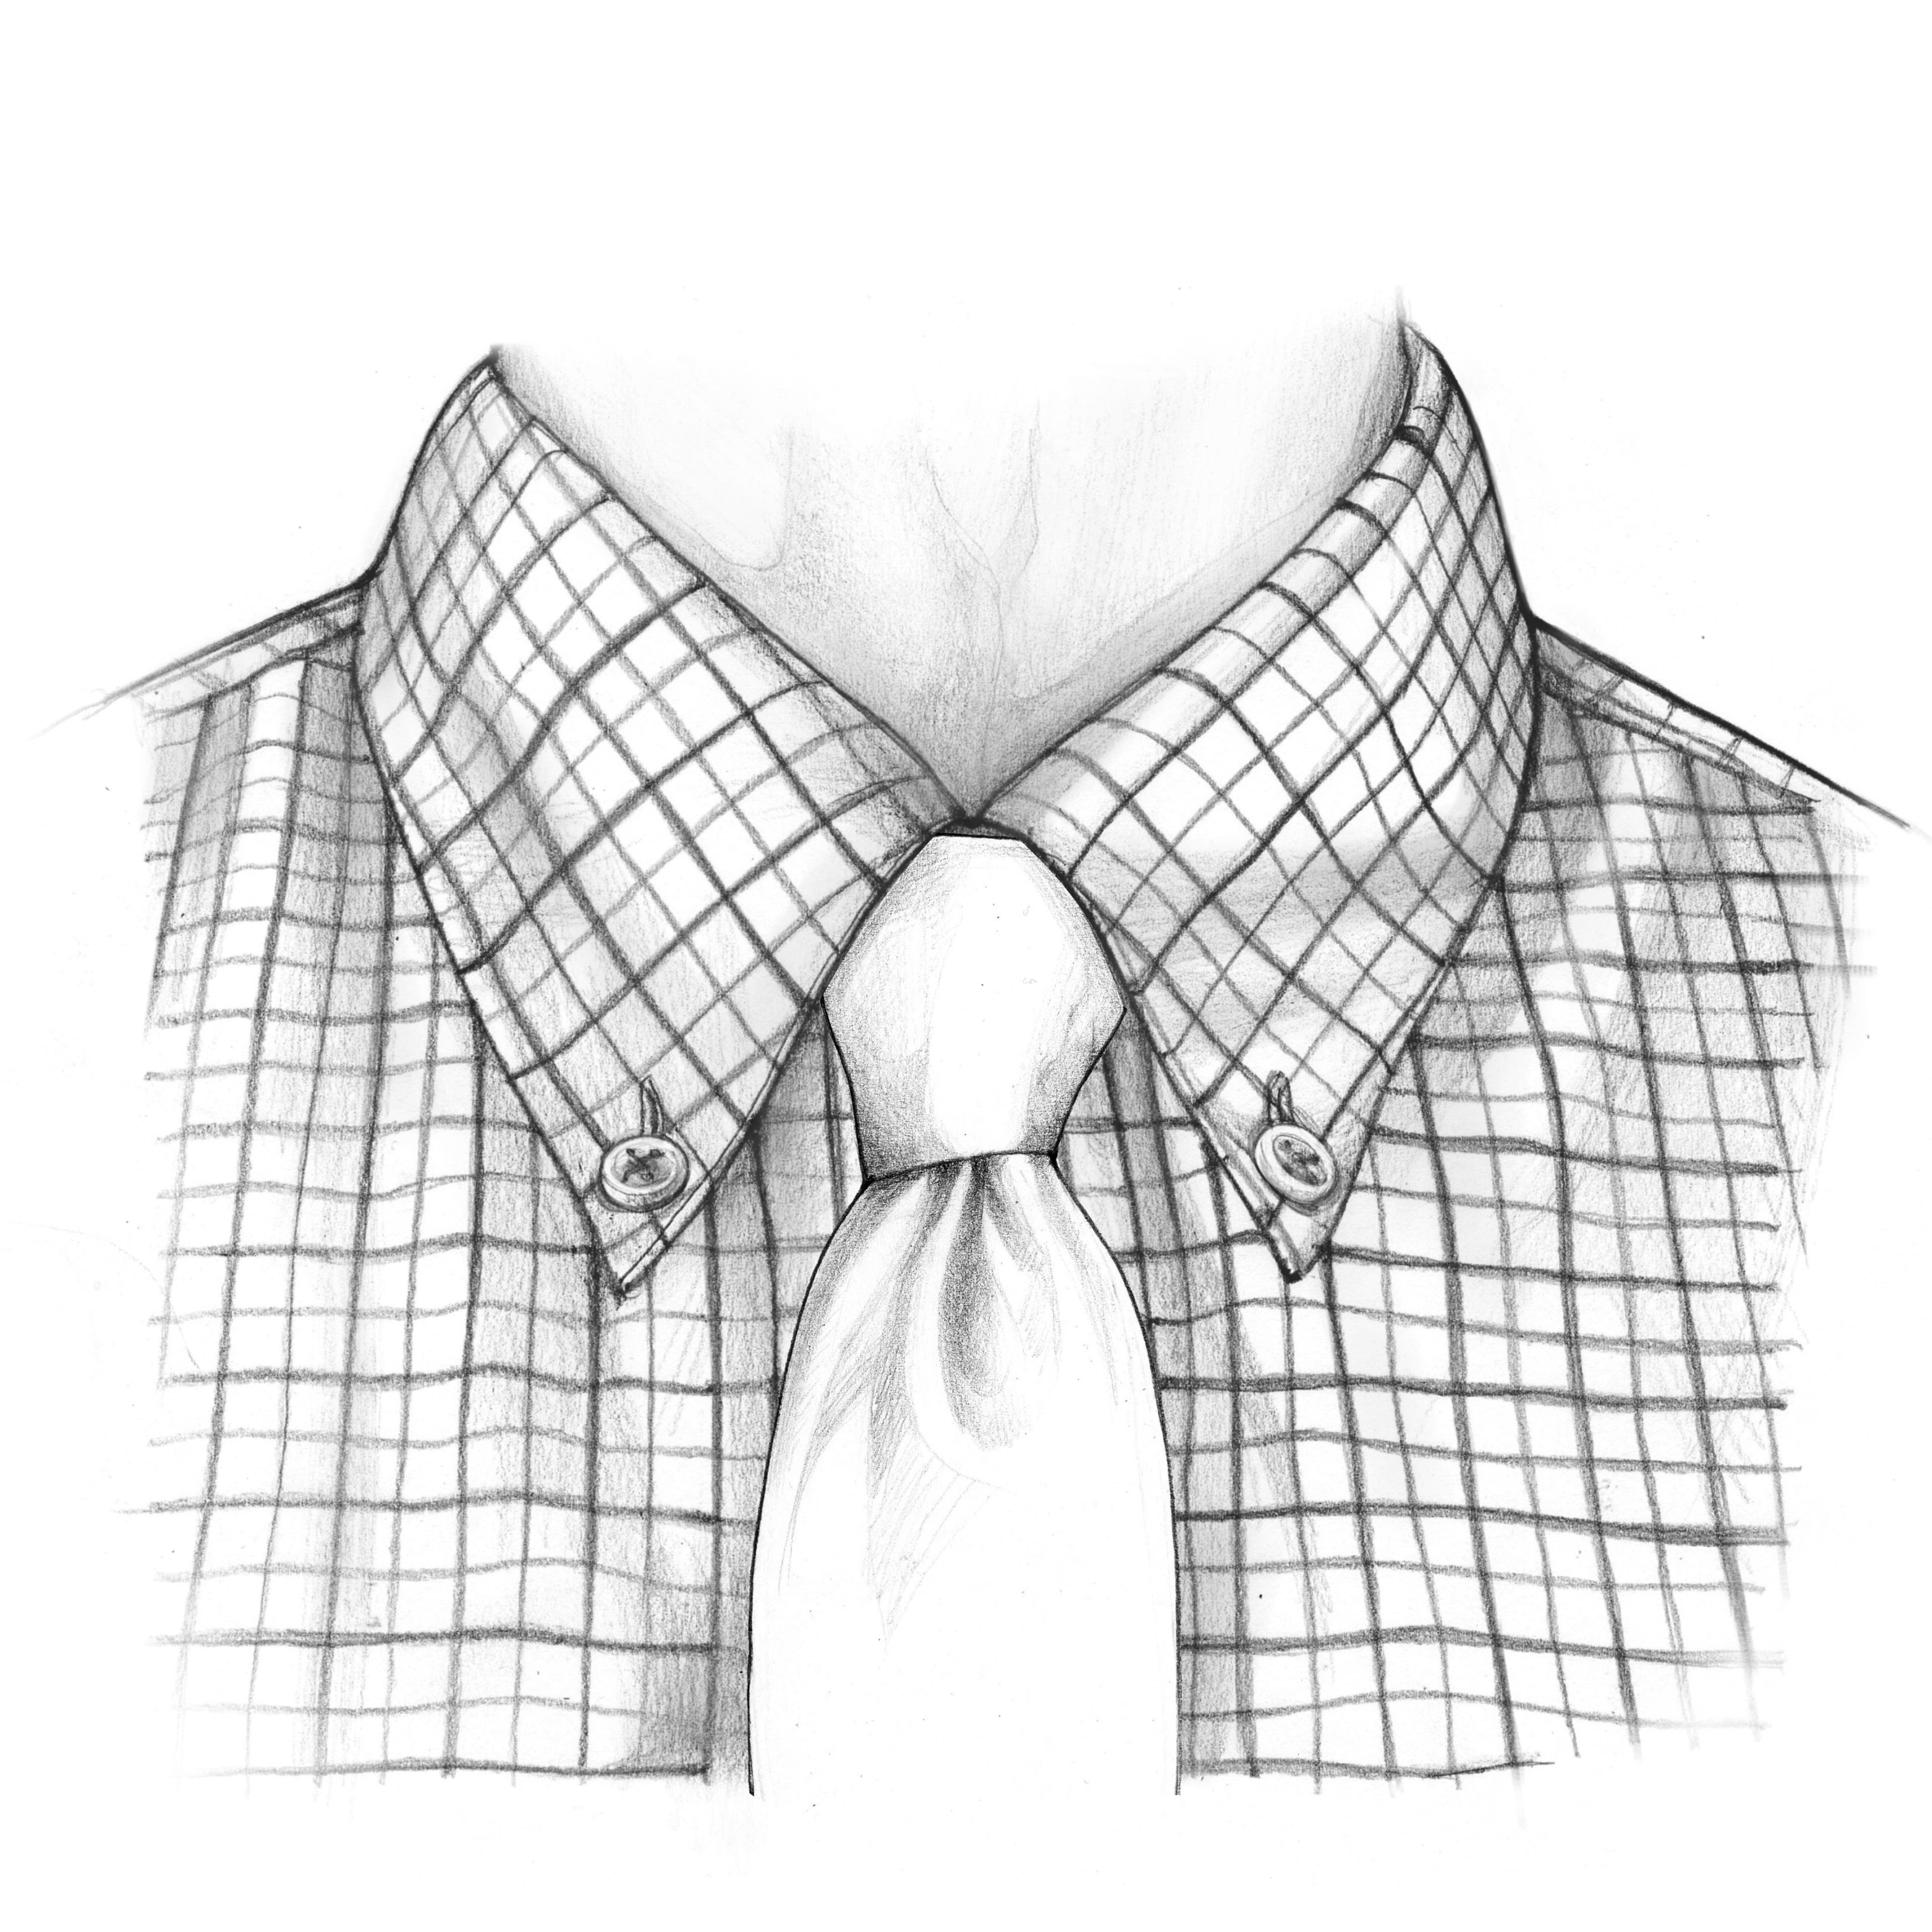 Der Oriental (Einfacher) Krawattenknoten